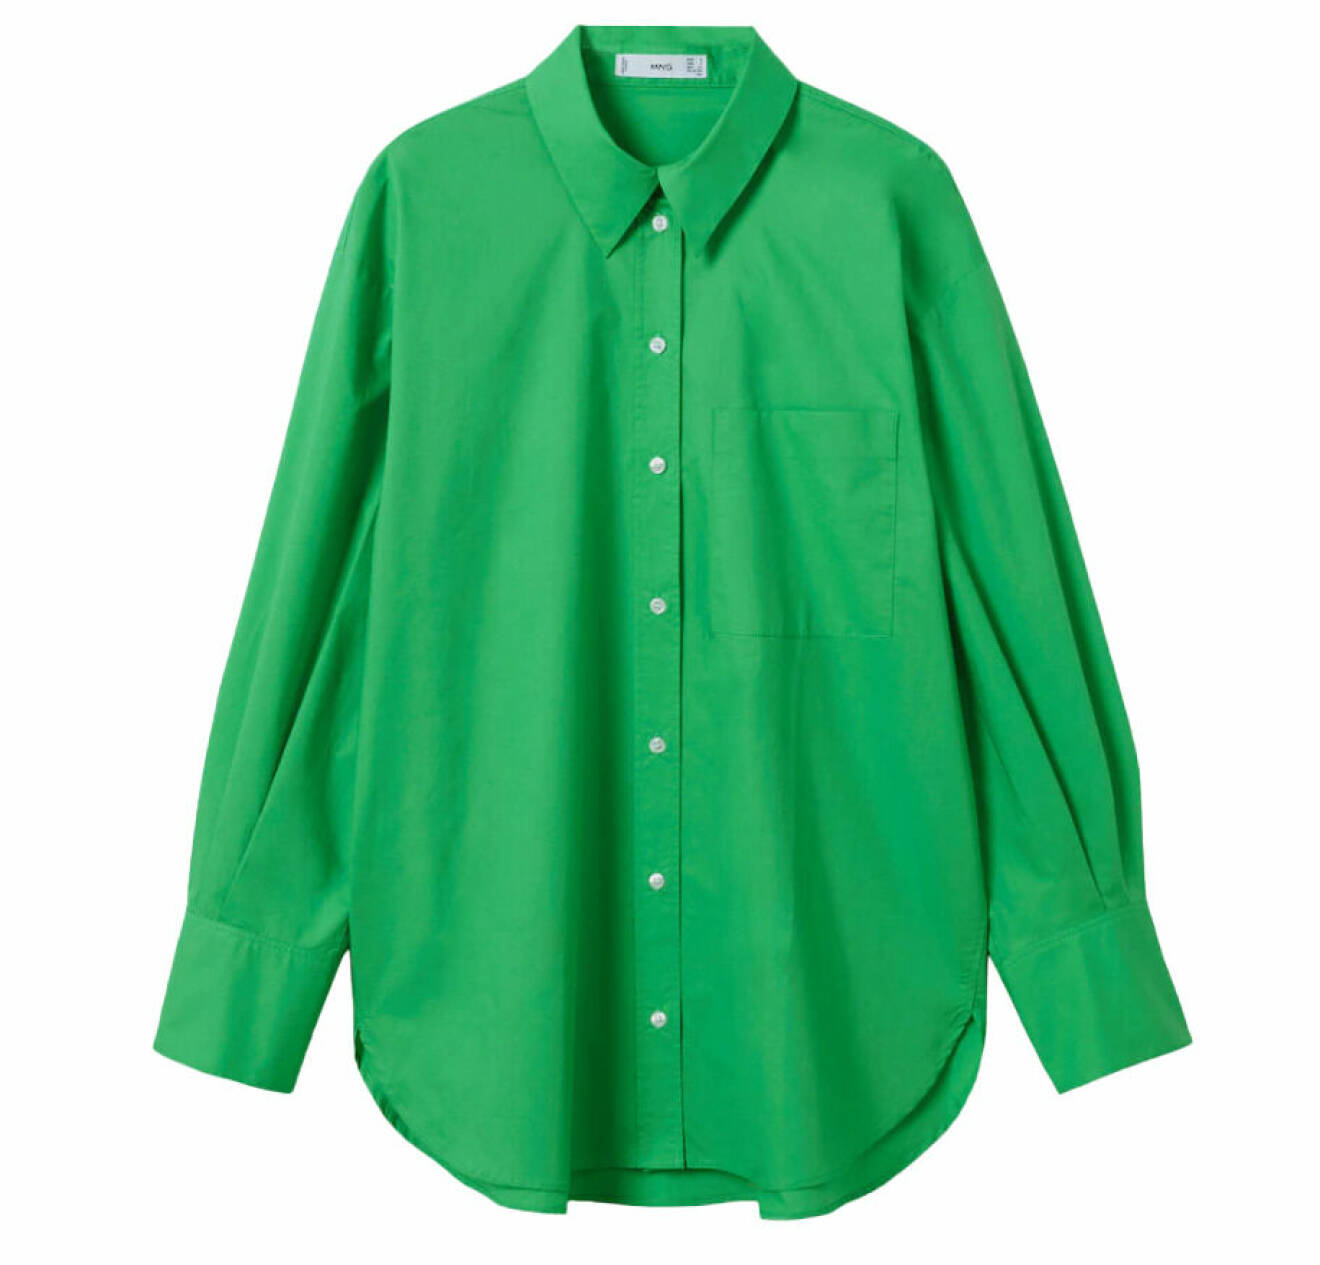 grön skjorta